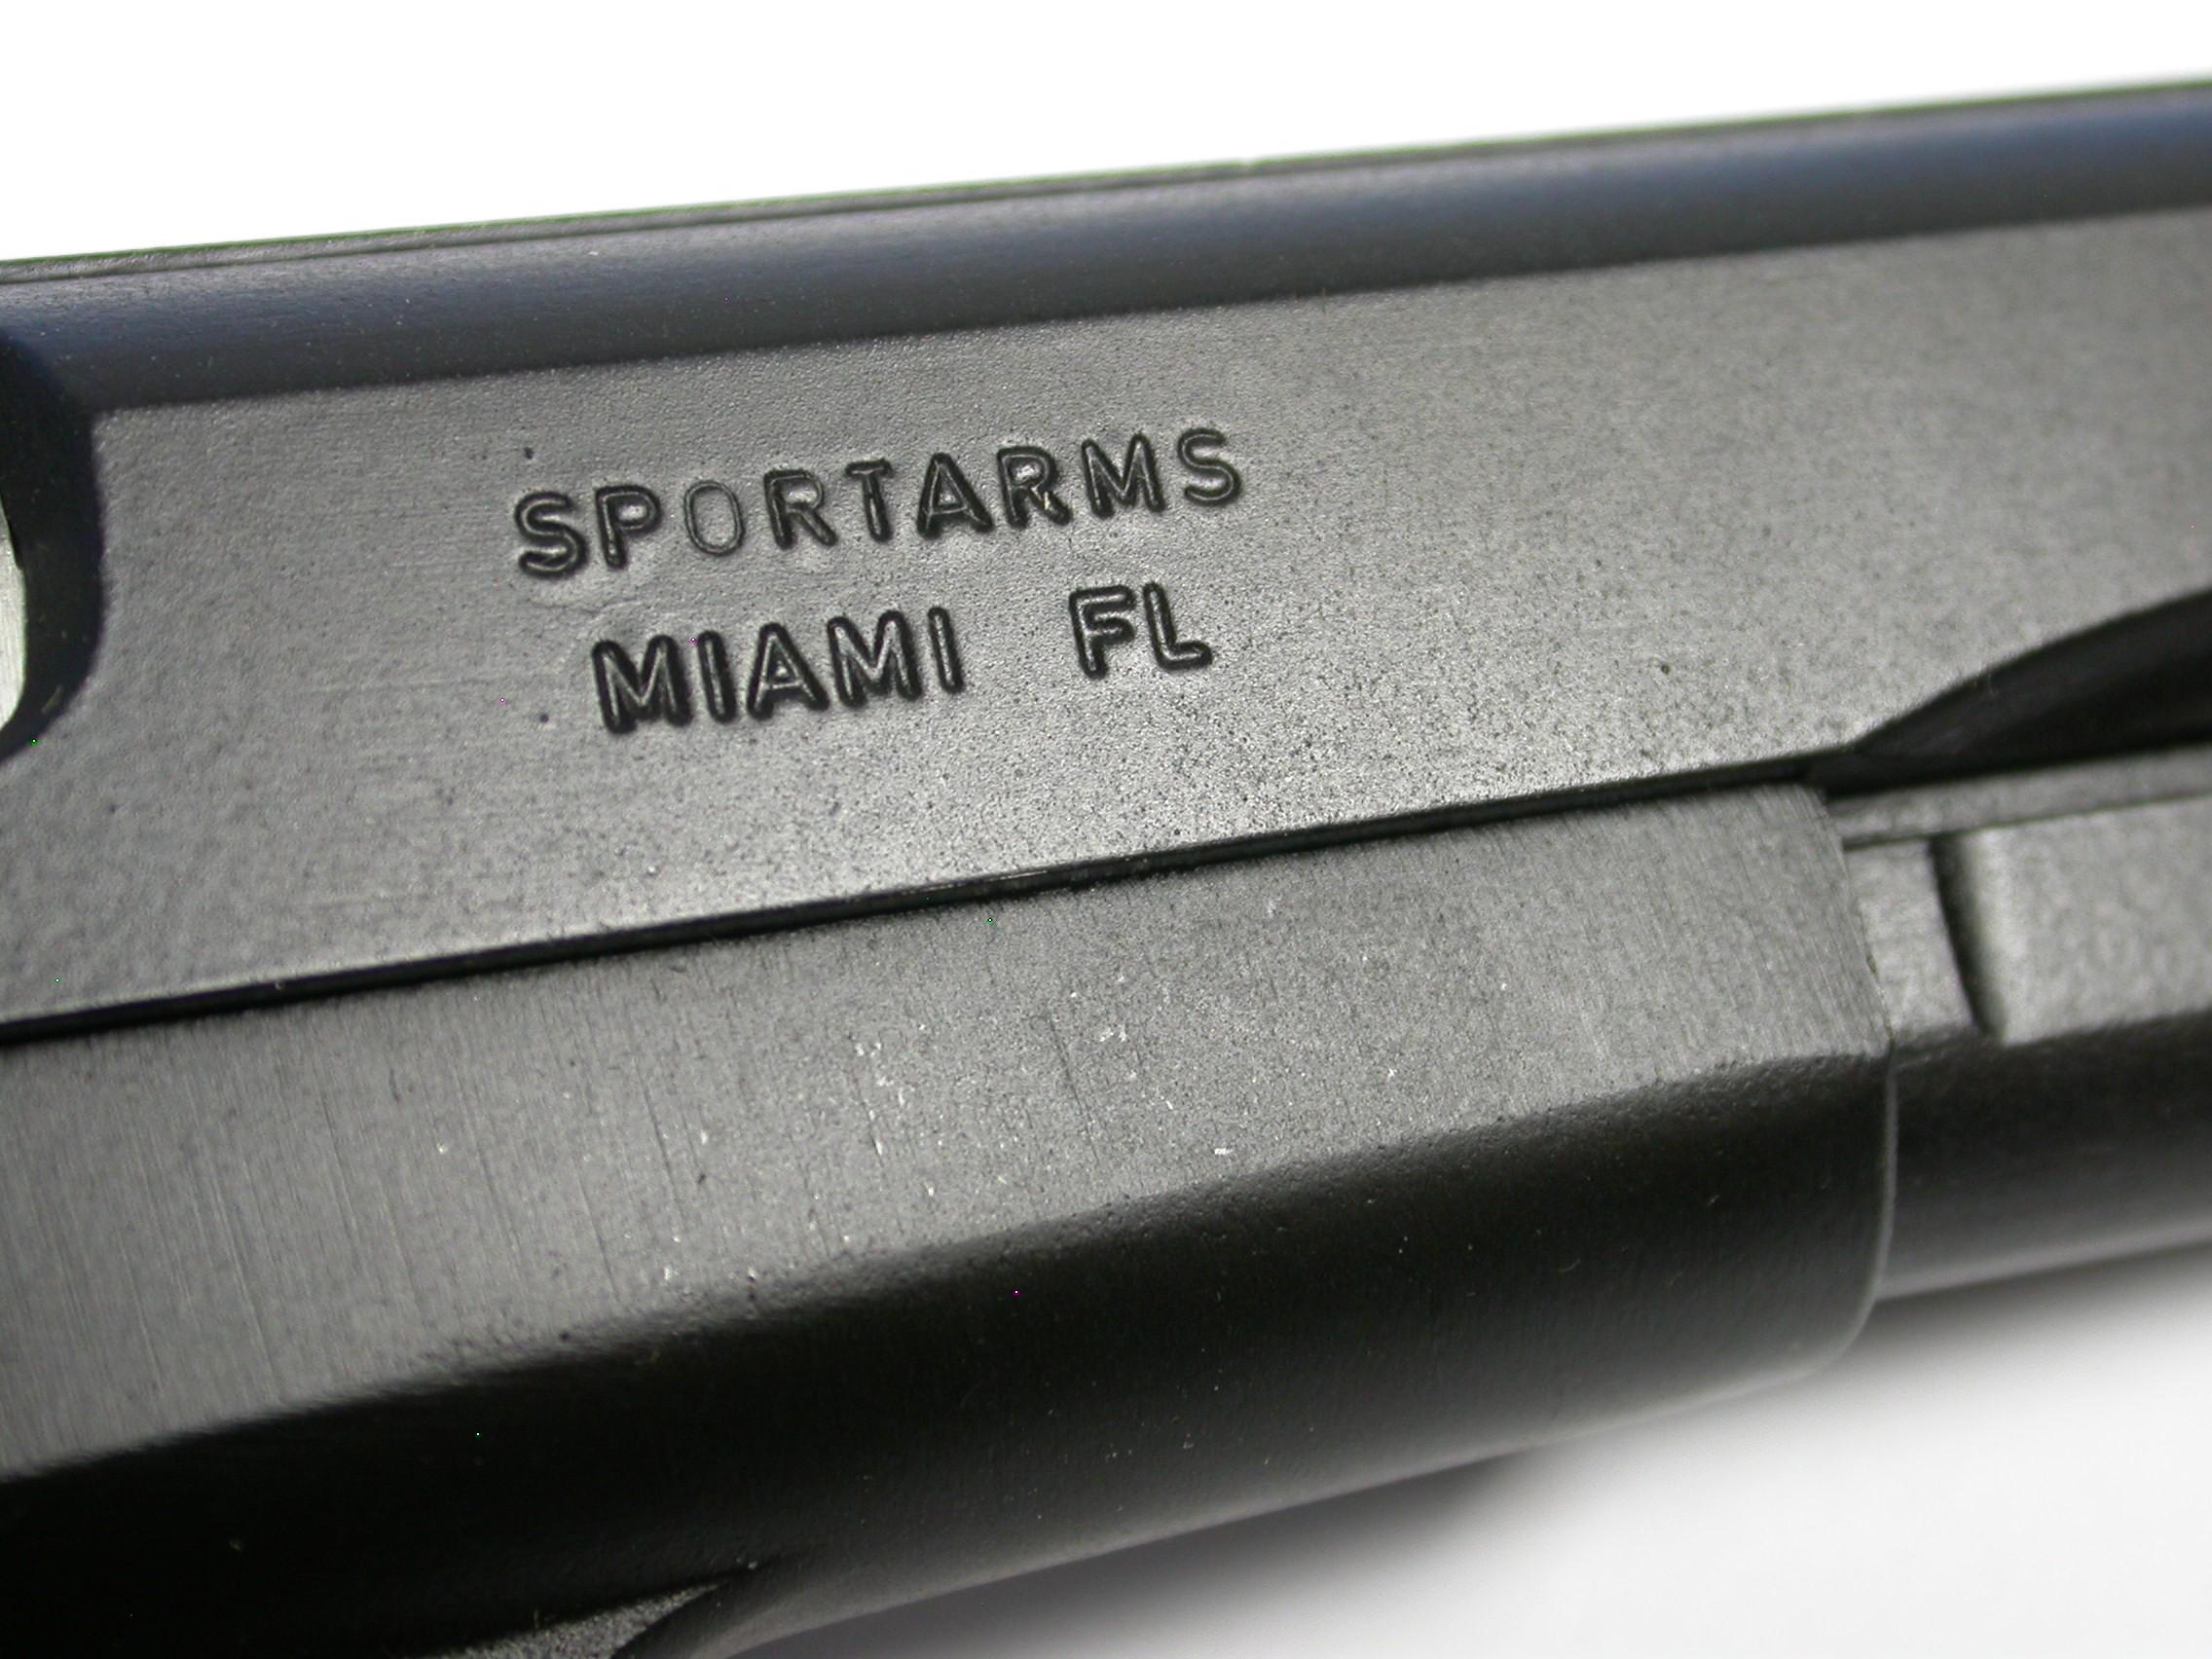 Argentine FM 9mm Hi-Power Semi-Automatic Pistol - FFL #385407 (DGJ)